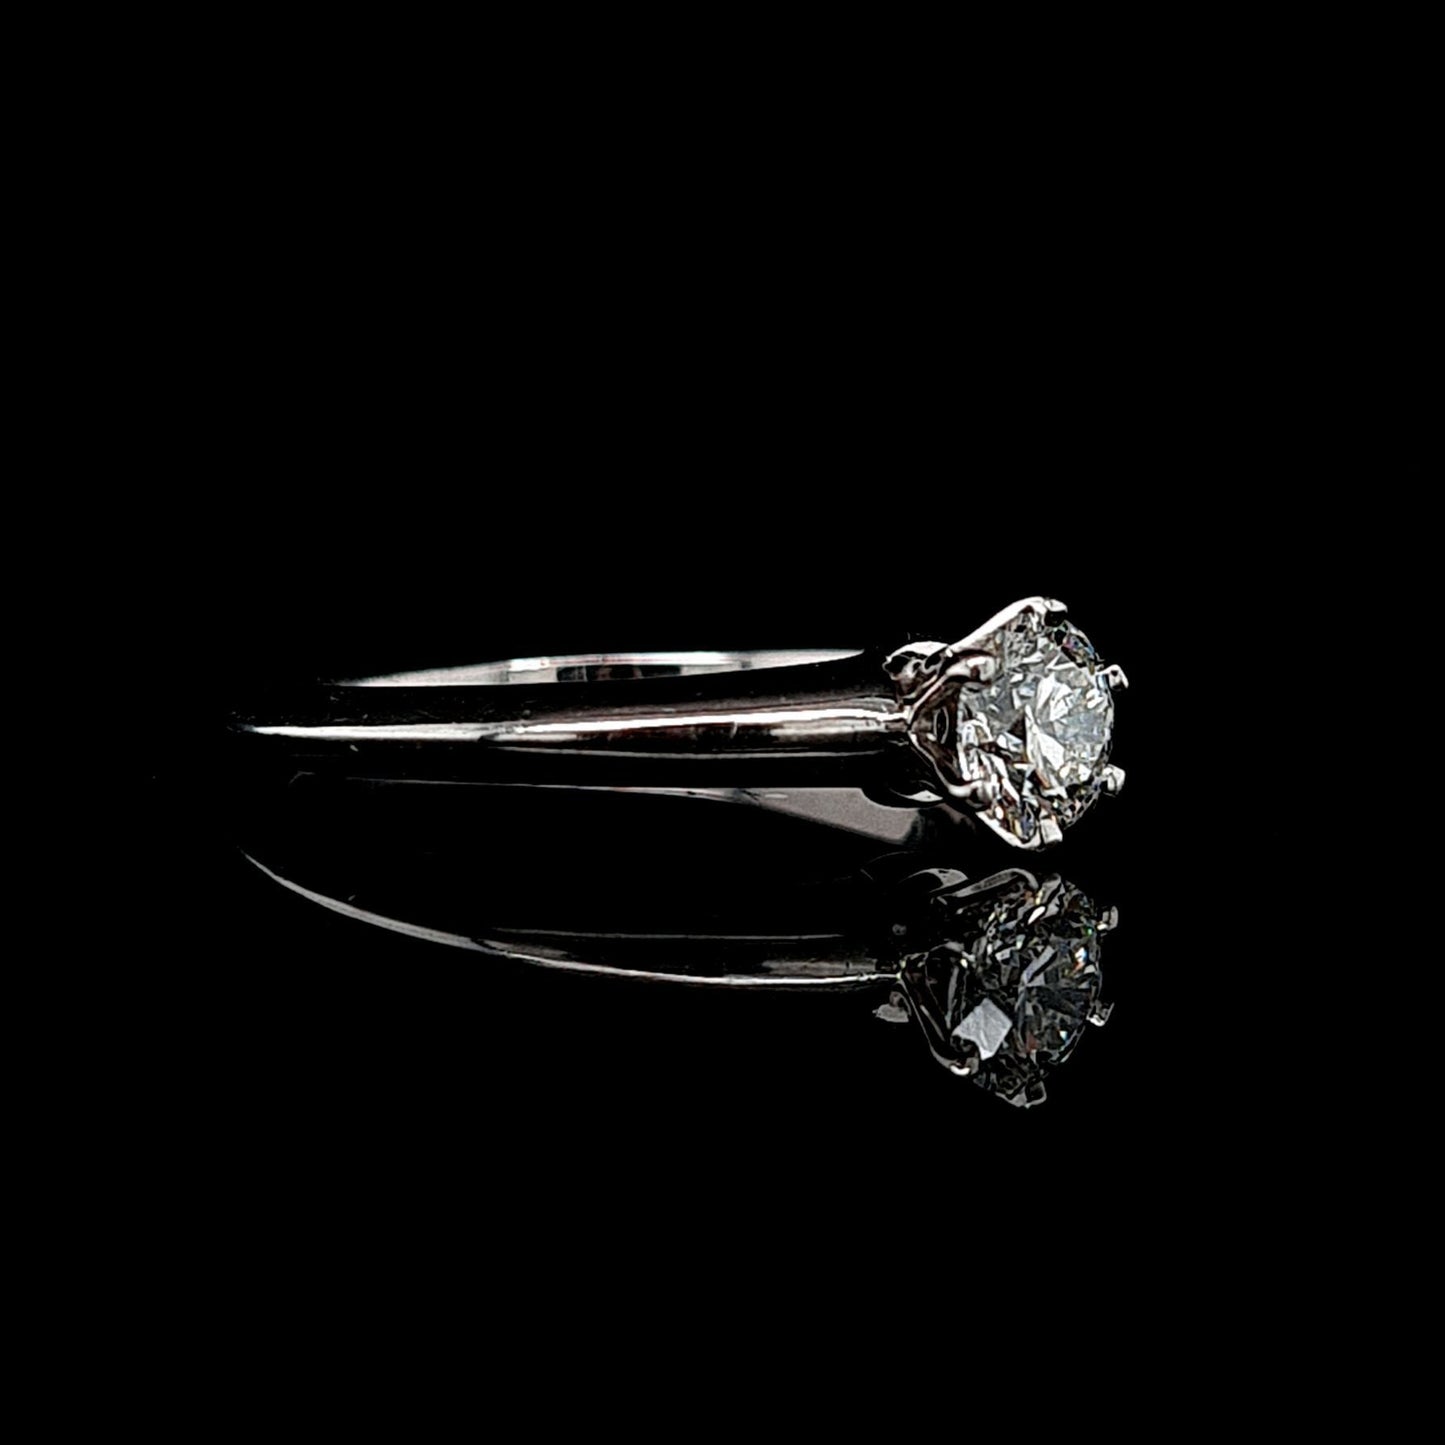 Tiffany & Co. 0.52ct Round Brilliant Cut Diamond Solitaire Ring